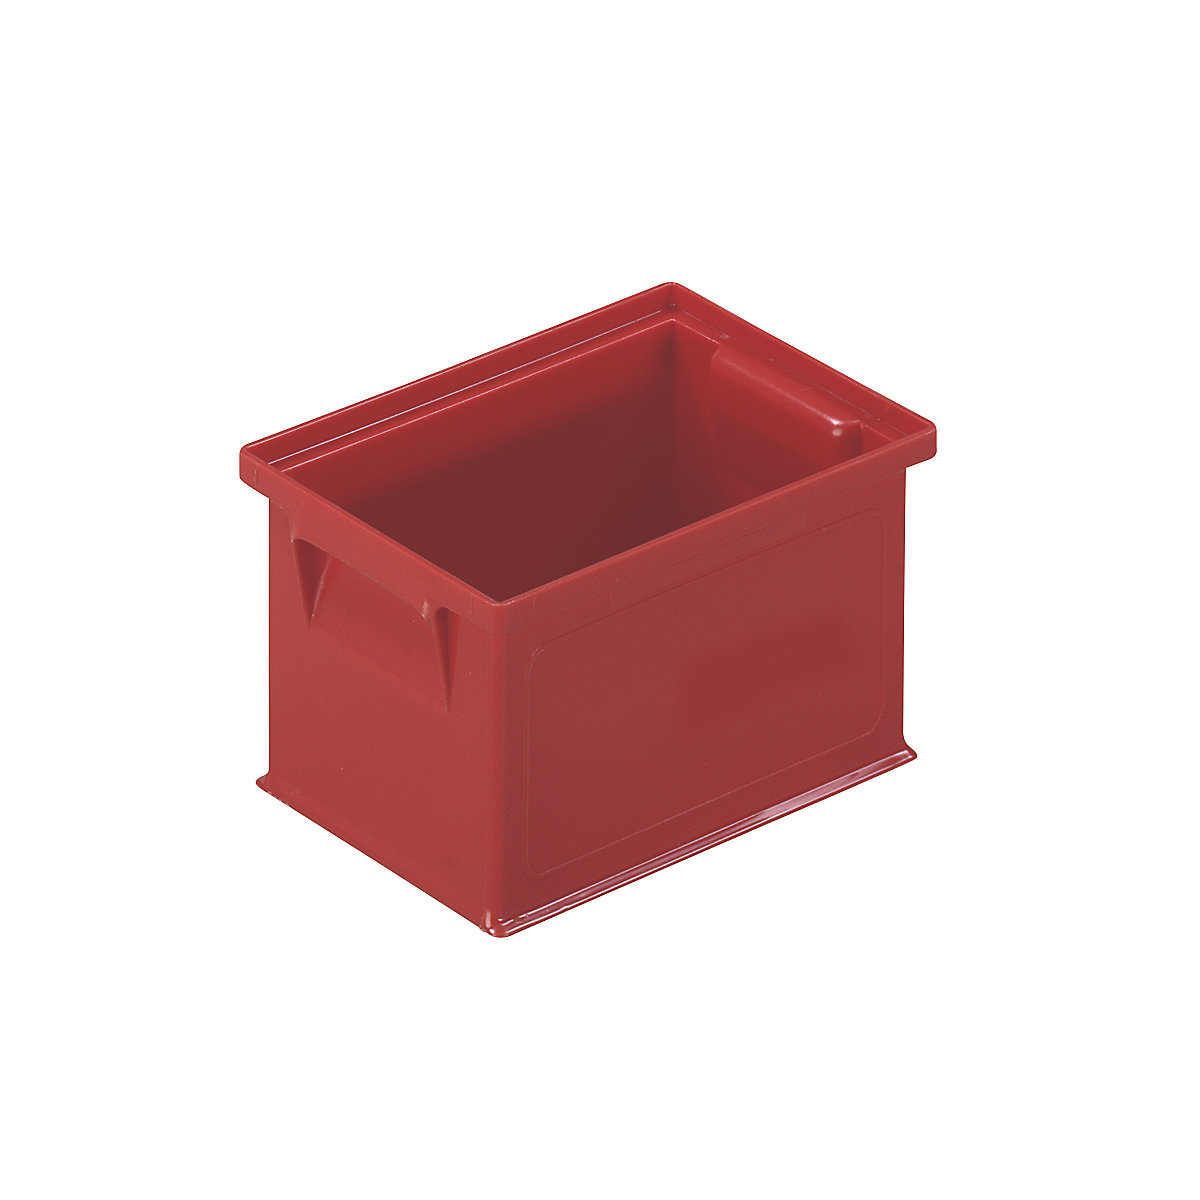 Cassa impilabile per trasporto, lungh. x largh. x alt. 210 x 150 x 122,5 mm, colore rosso, conf. da 40 pezzi-3